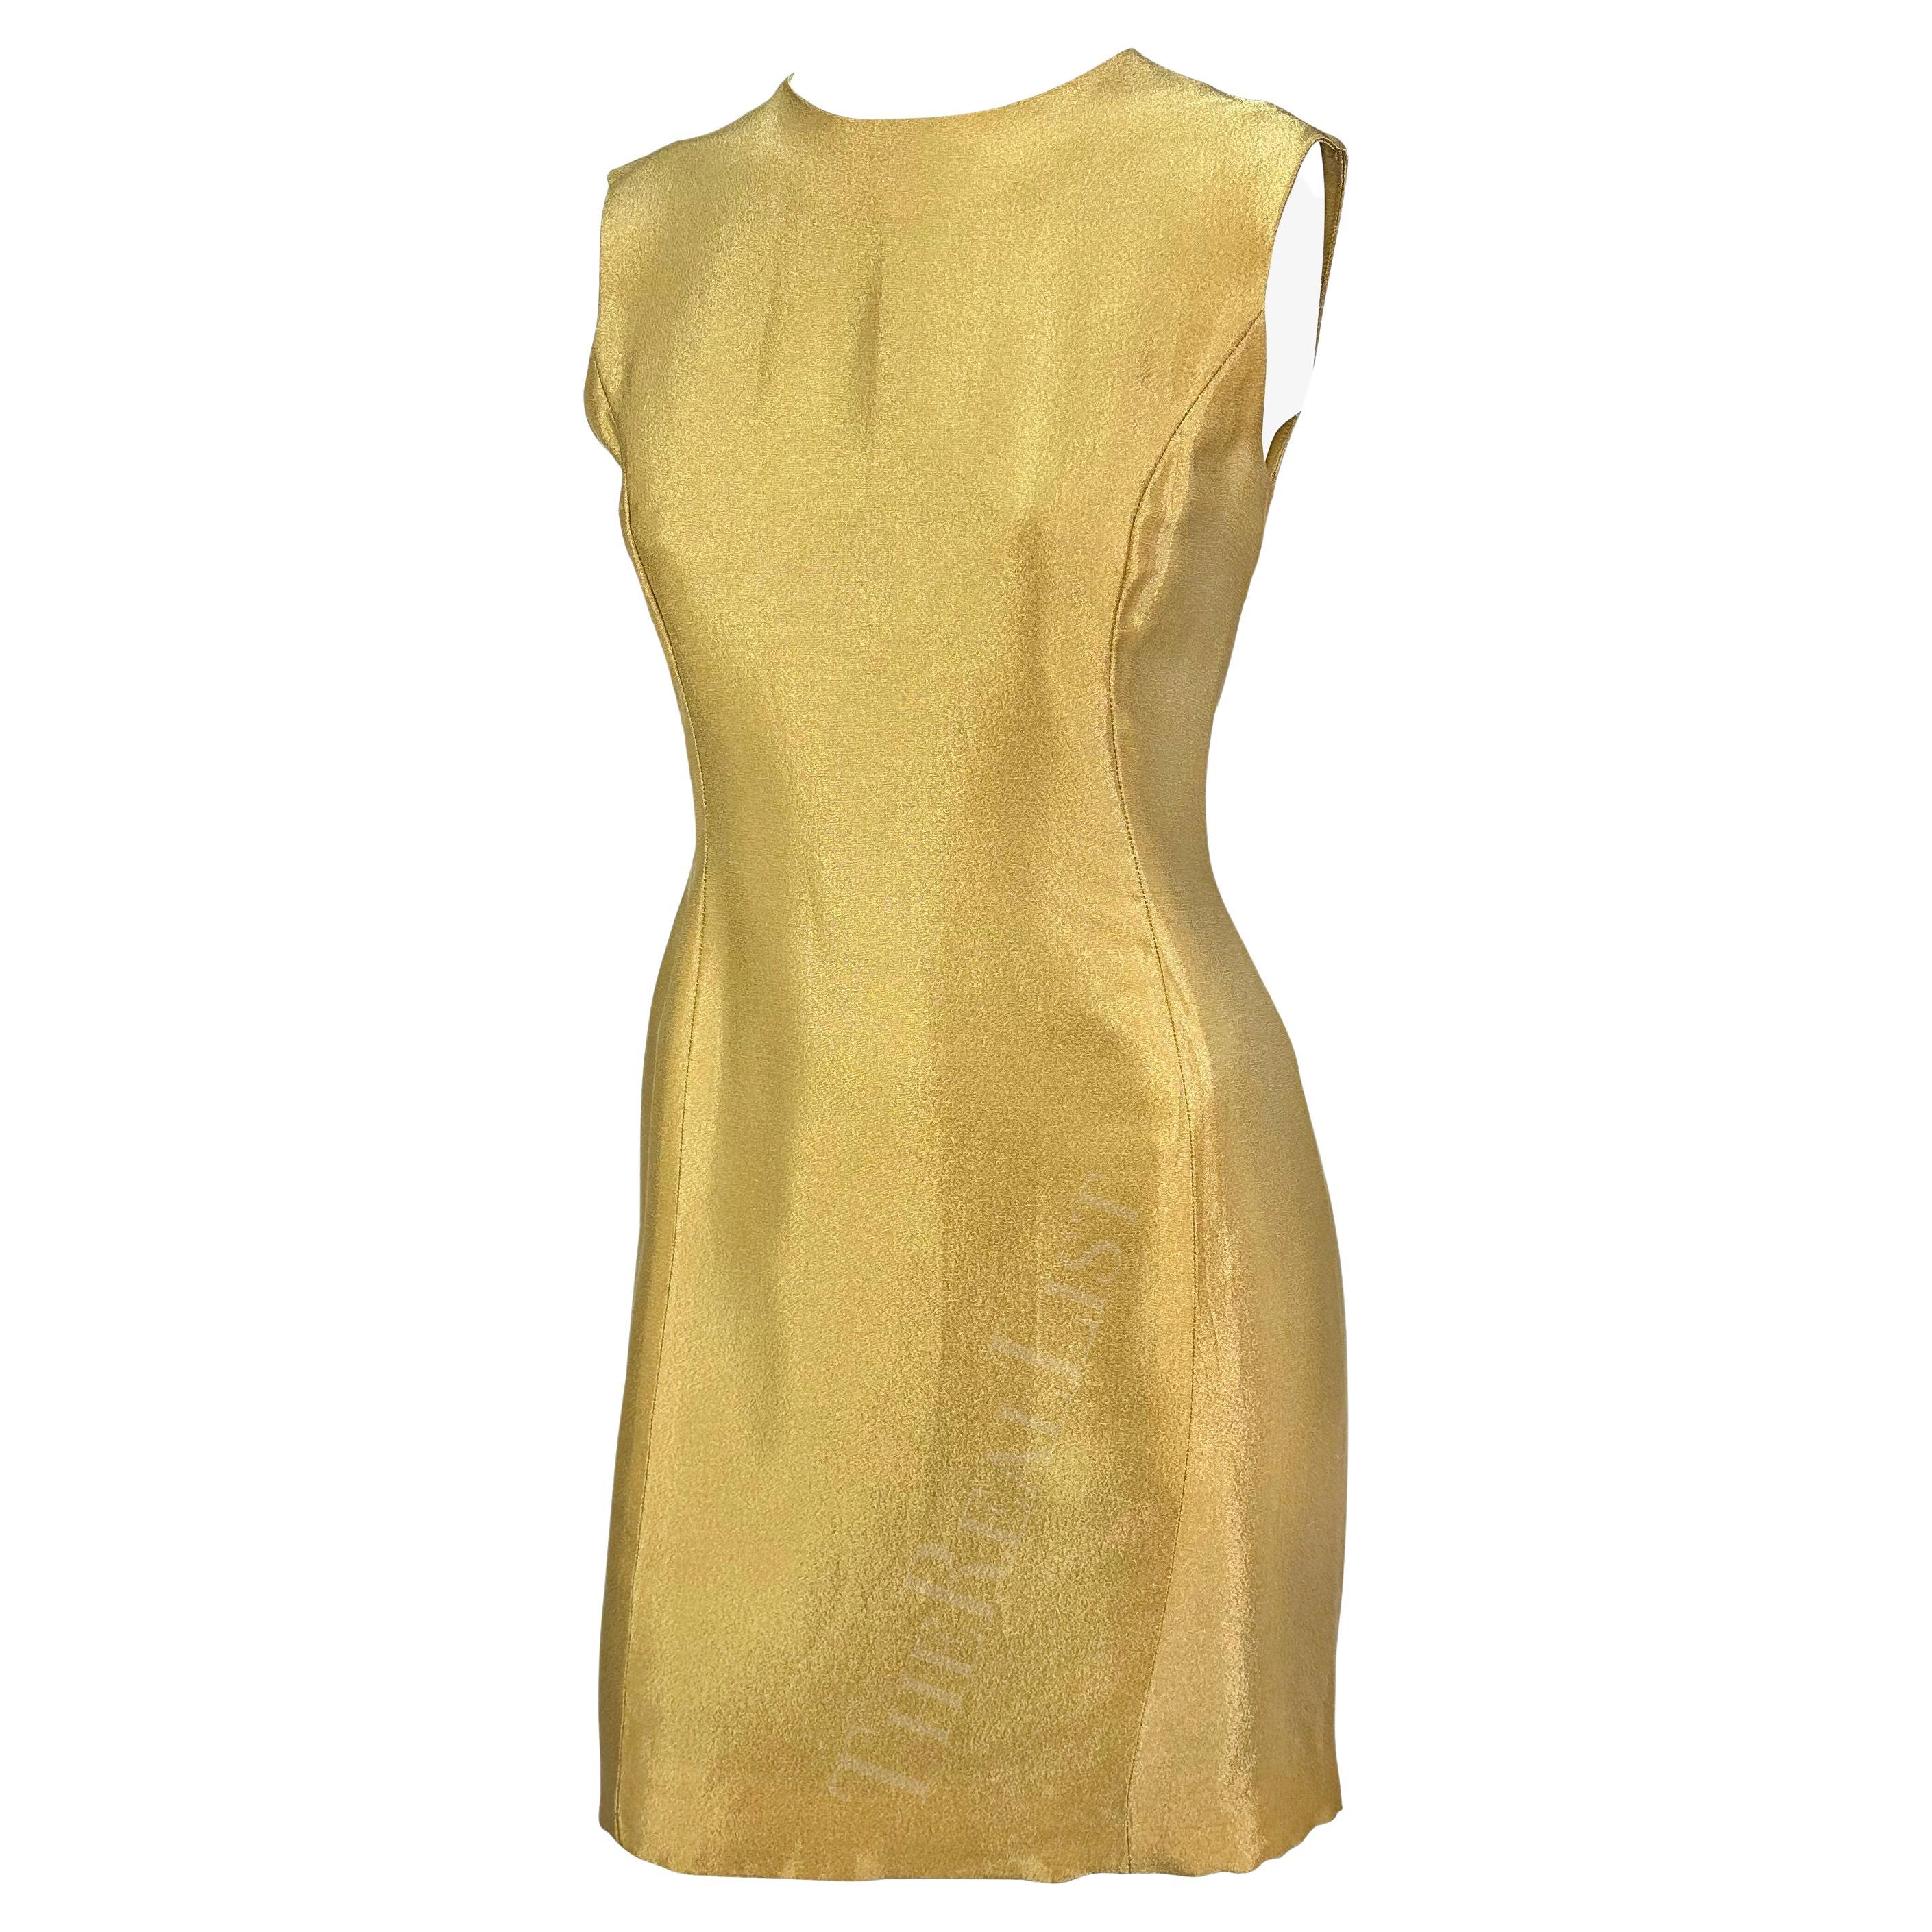 Nous vous présentons une fabuleuse robe Gianni Versace en or métallisé, créée par Gianni Versace. Issue de la collection Automne/Hiver 1994, cette robe est entièrement réalisée en soie mélangée or métallisé chatoyant. Cette robe sans manches